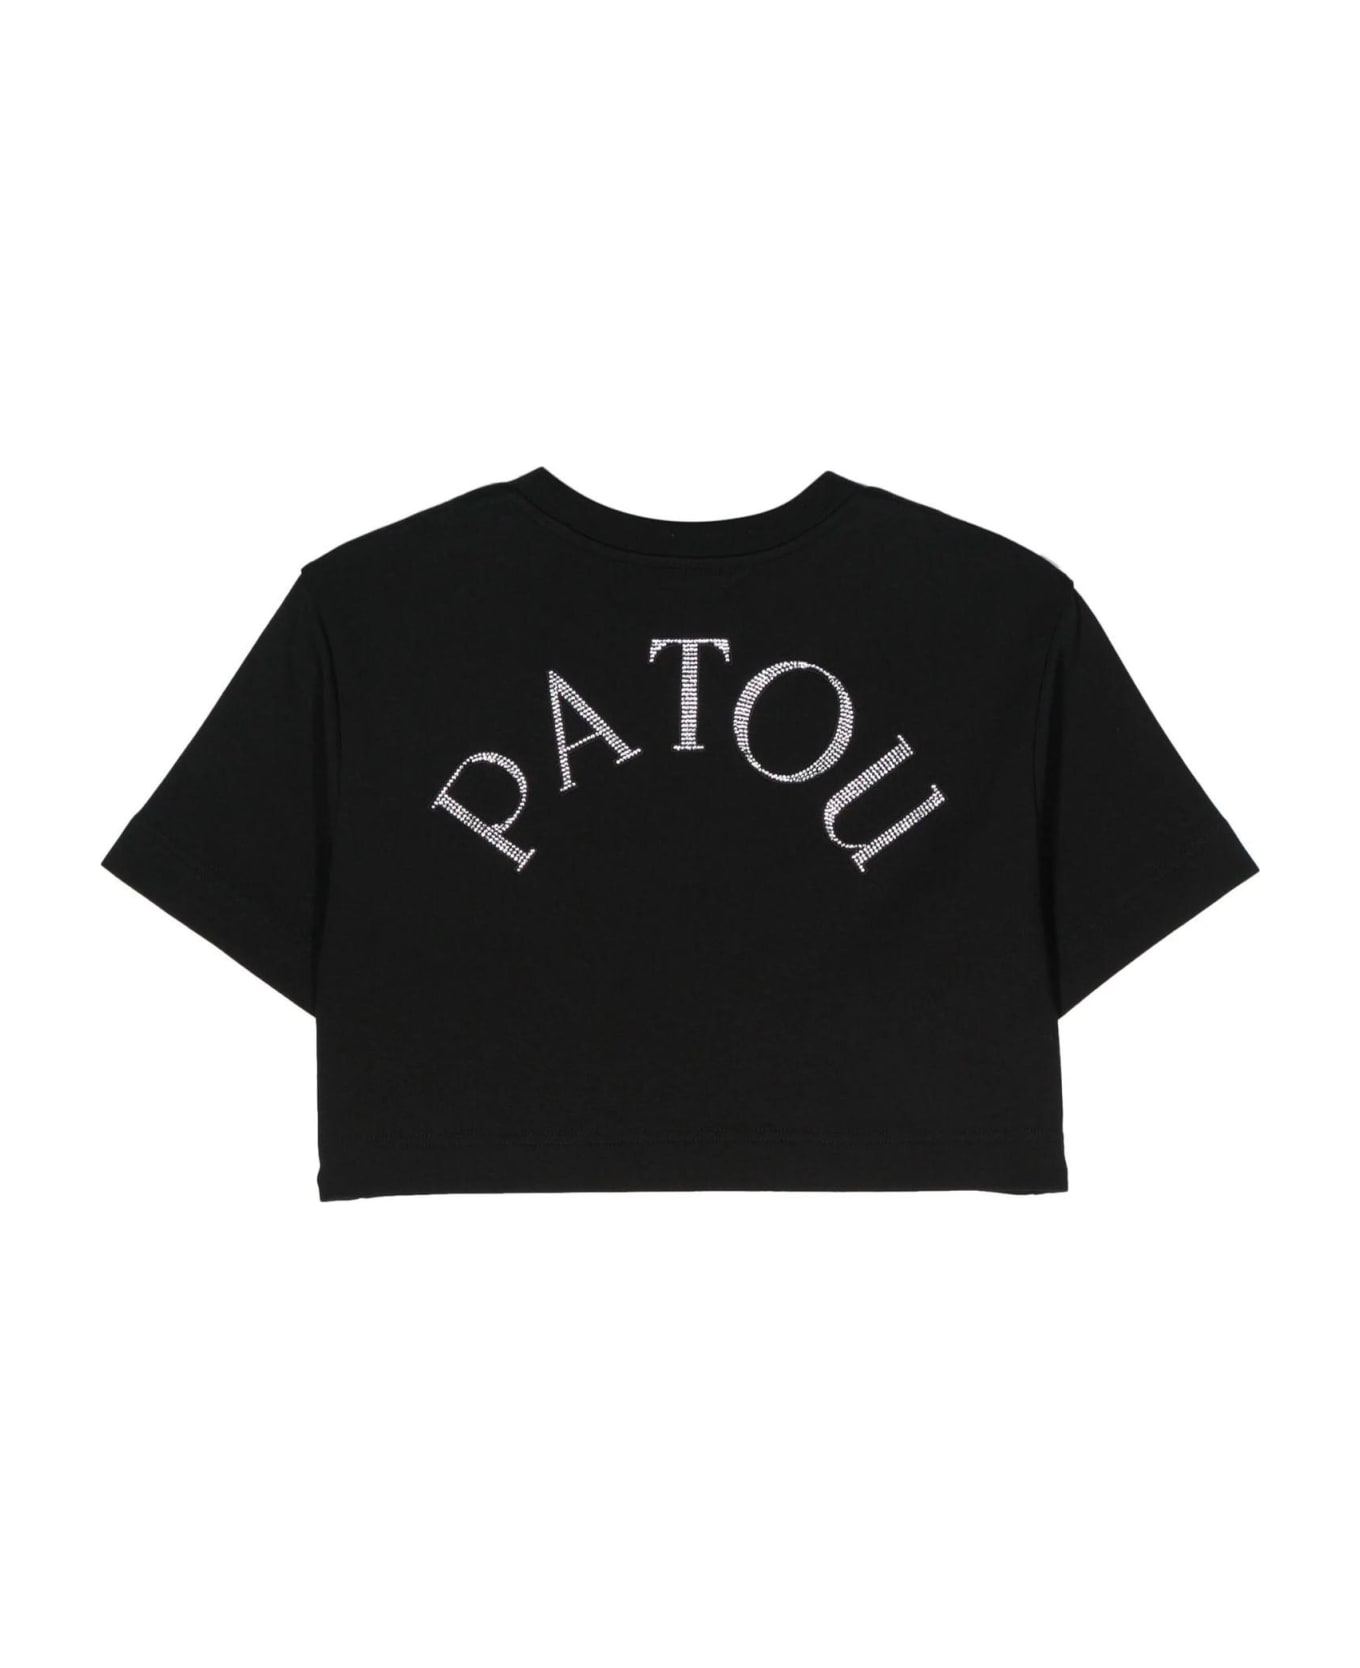 Patou Black Organic Cotton T-shirt - Black